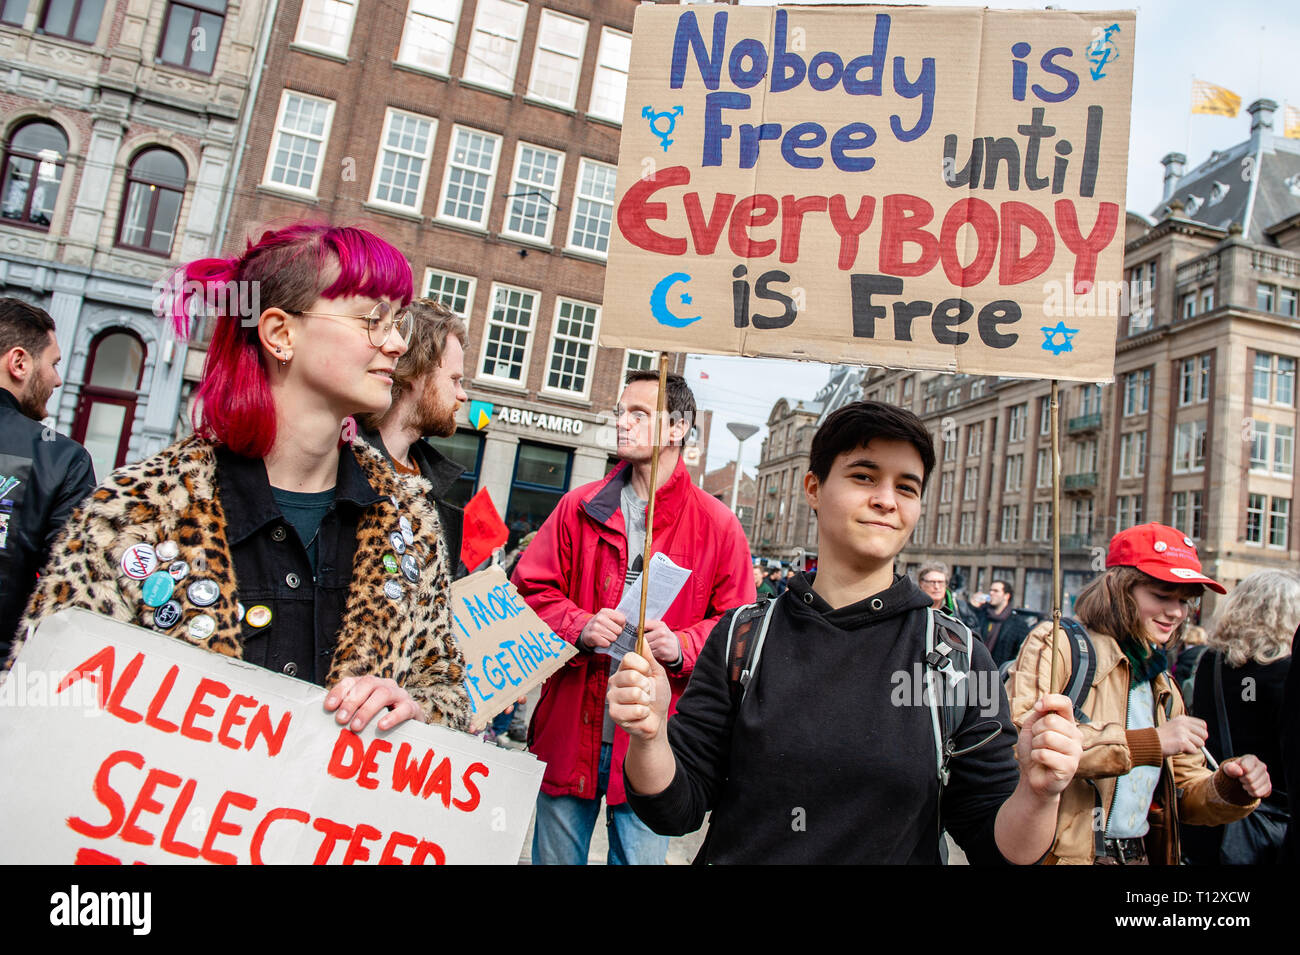 Junge Menschen werden gesehen, Plakate während der Demonstration. Tausende von Menschen an den Dam Platz im Zentrum von Amsterdam versammelt, um gegen Rassismus und Diskriminierung zu demonstrieren. Sie bitten um Vielfalt und Solidarität, gegen alle Formen von Rassismus und Diskriminierung. Auch gegen die beiden politischen Parteien der extremen Rechten in den Niederlanden, die Pvv und der FvD, die ihre Macht während der letzten Wahlen im Land zugenommen haben. Eine kleine rechtsextreme Gruppe zeigte sich während der Wanderung zwei große Plakate und Schreien bei den Demonstranten. Stockfoto